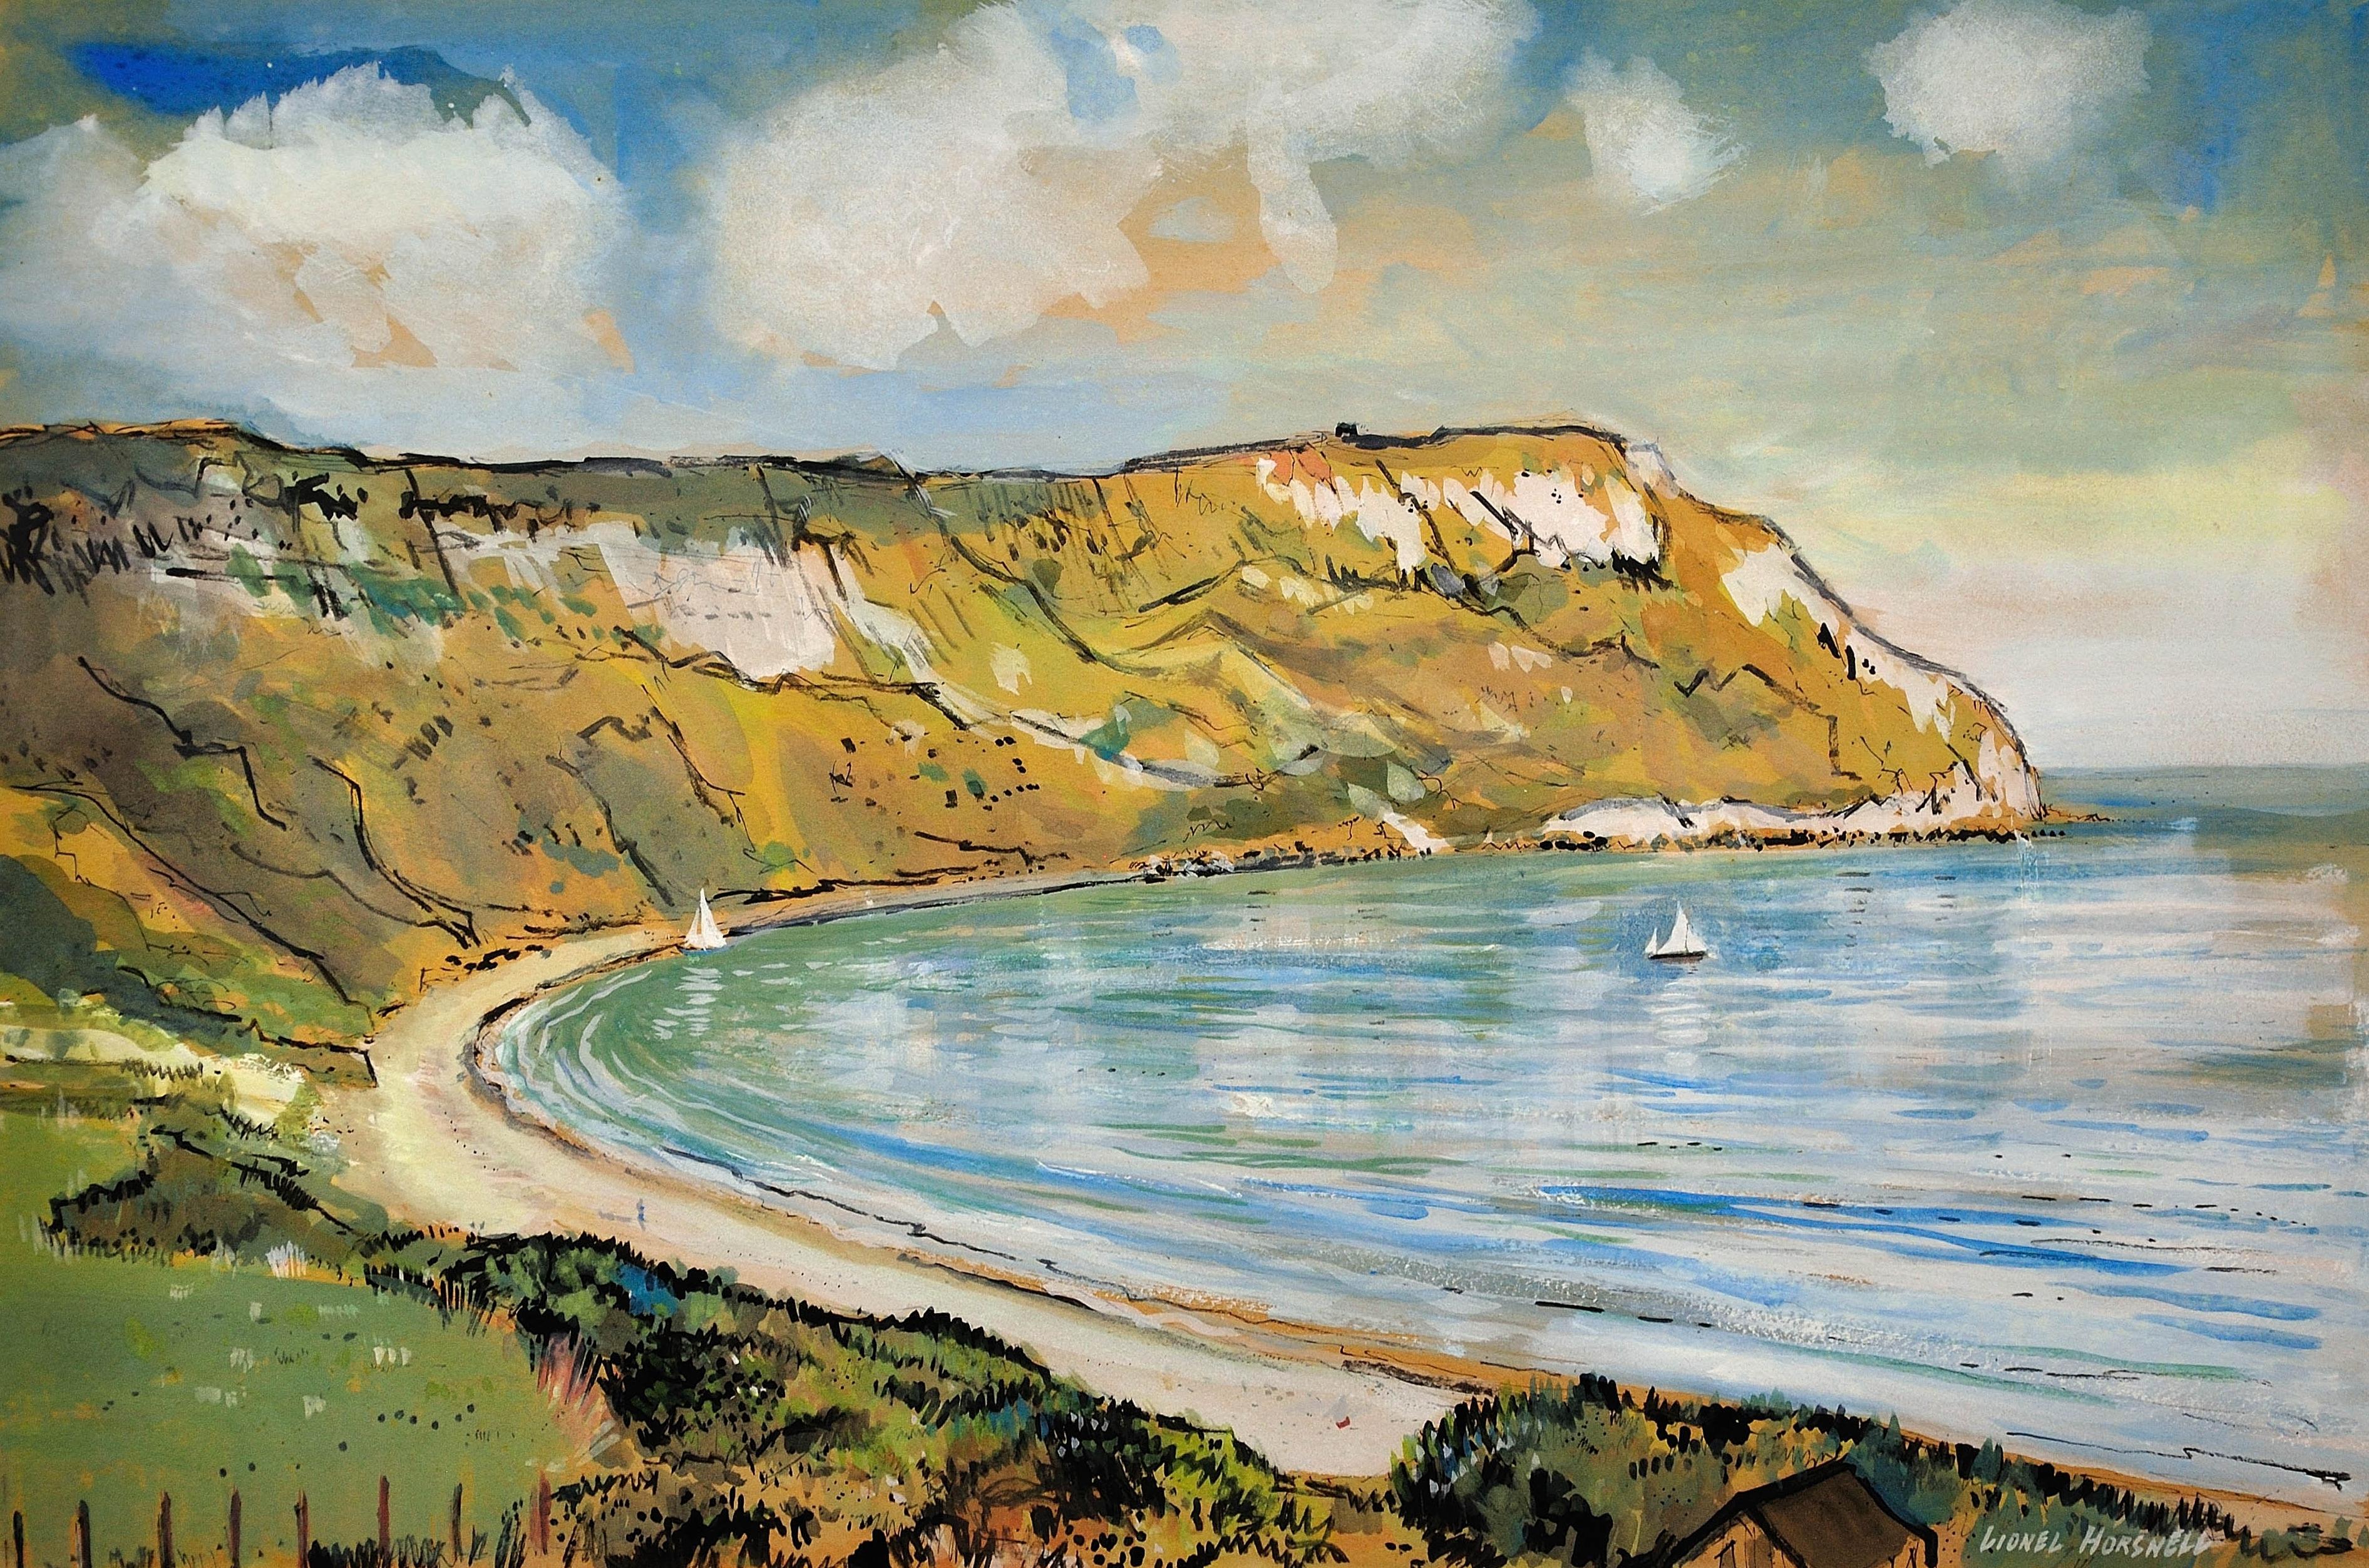 Ringstead Bay und White Nothe. Dorset. Weymouth und Portland. Jurassic Coast. – Art von Lionel Horsnell